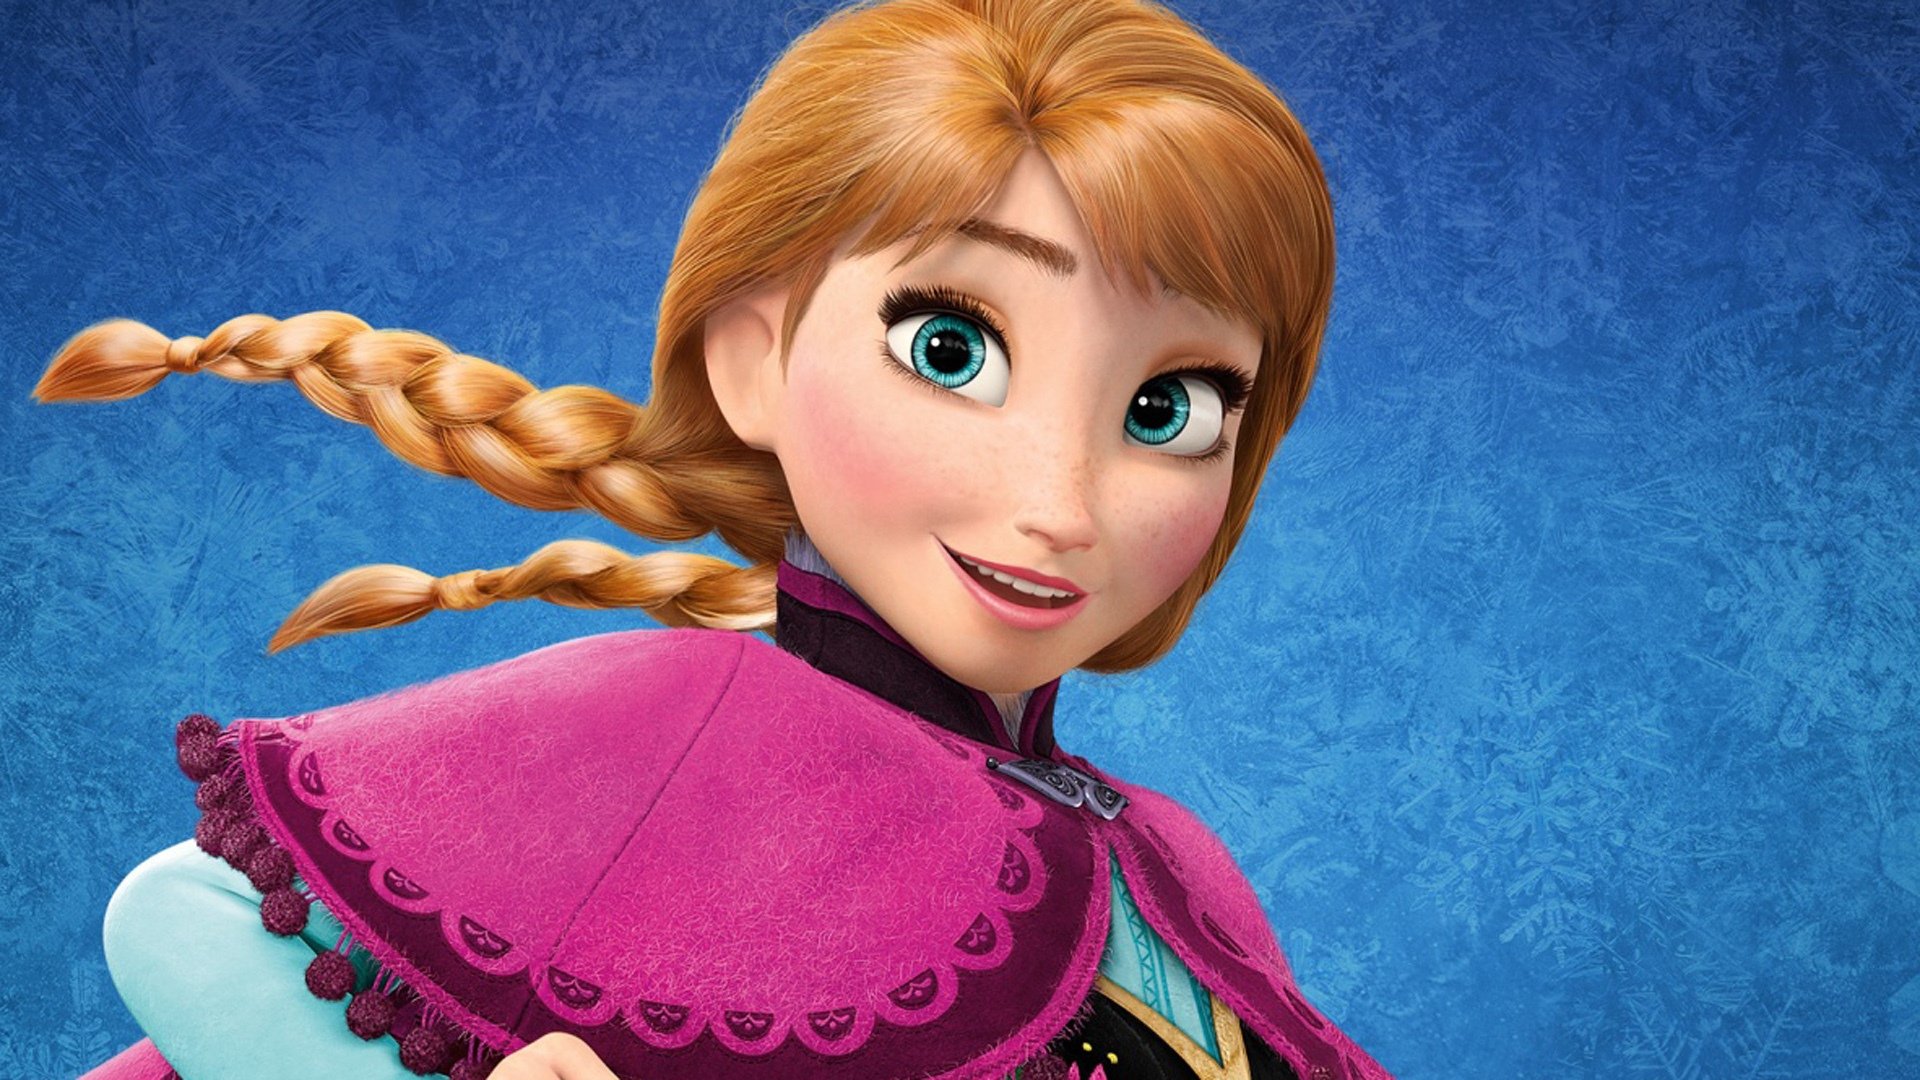 Free download wallpaper Frozen, Movie, Frozen (Movie), Anna (Frozen) on your PC desktop